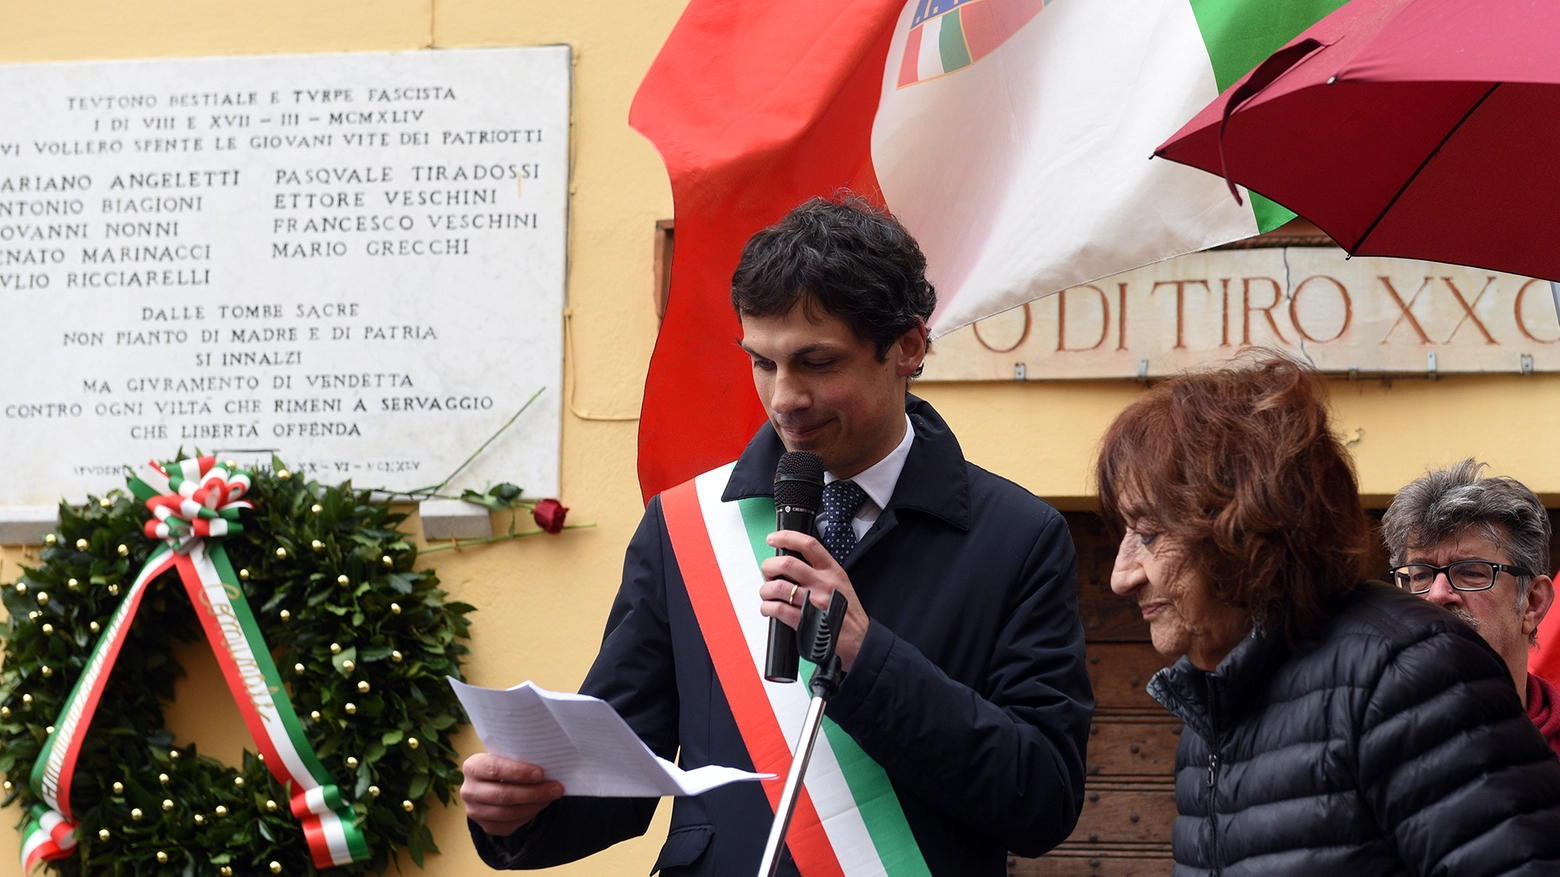 Celebrazioni 25 Aprile in Umbria (Foto Crocchioni)